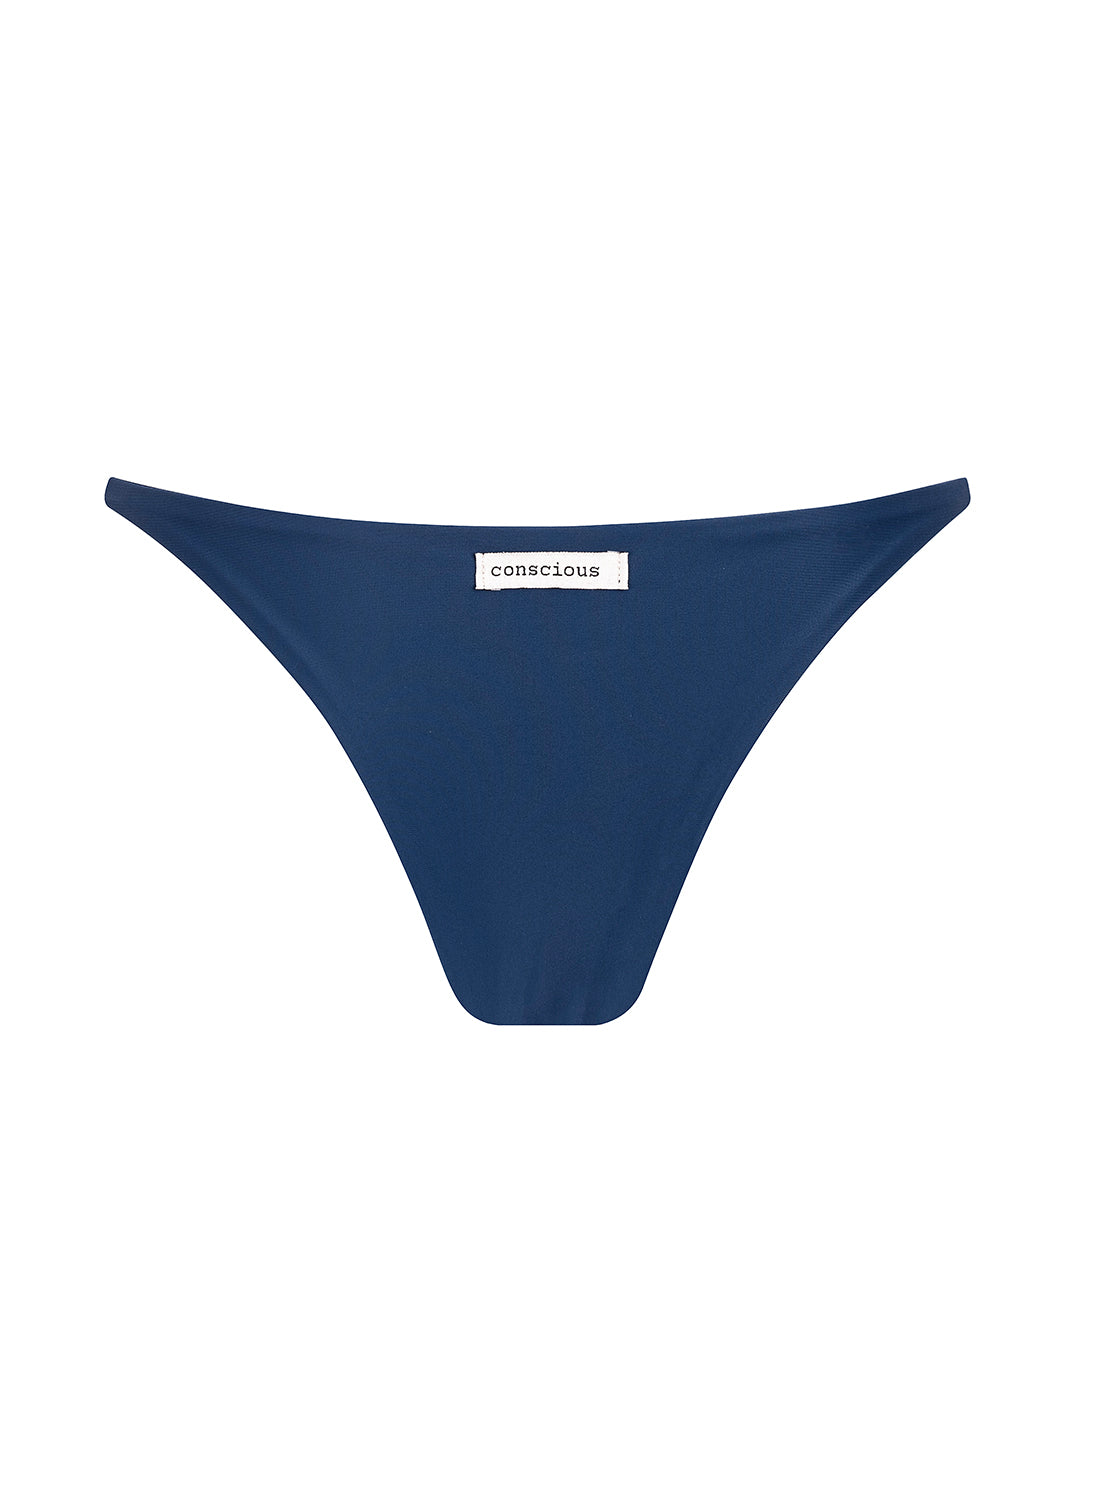 sustainable swimwear bottoms nala midnight blue